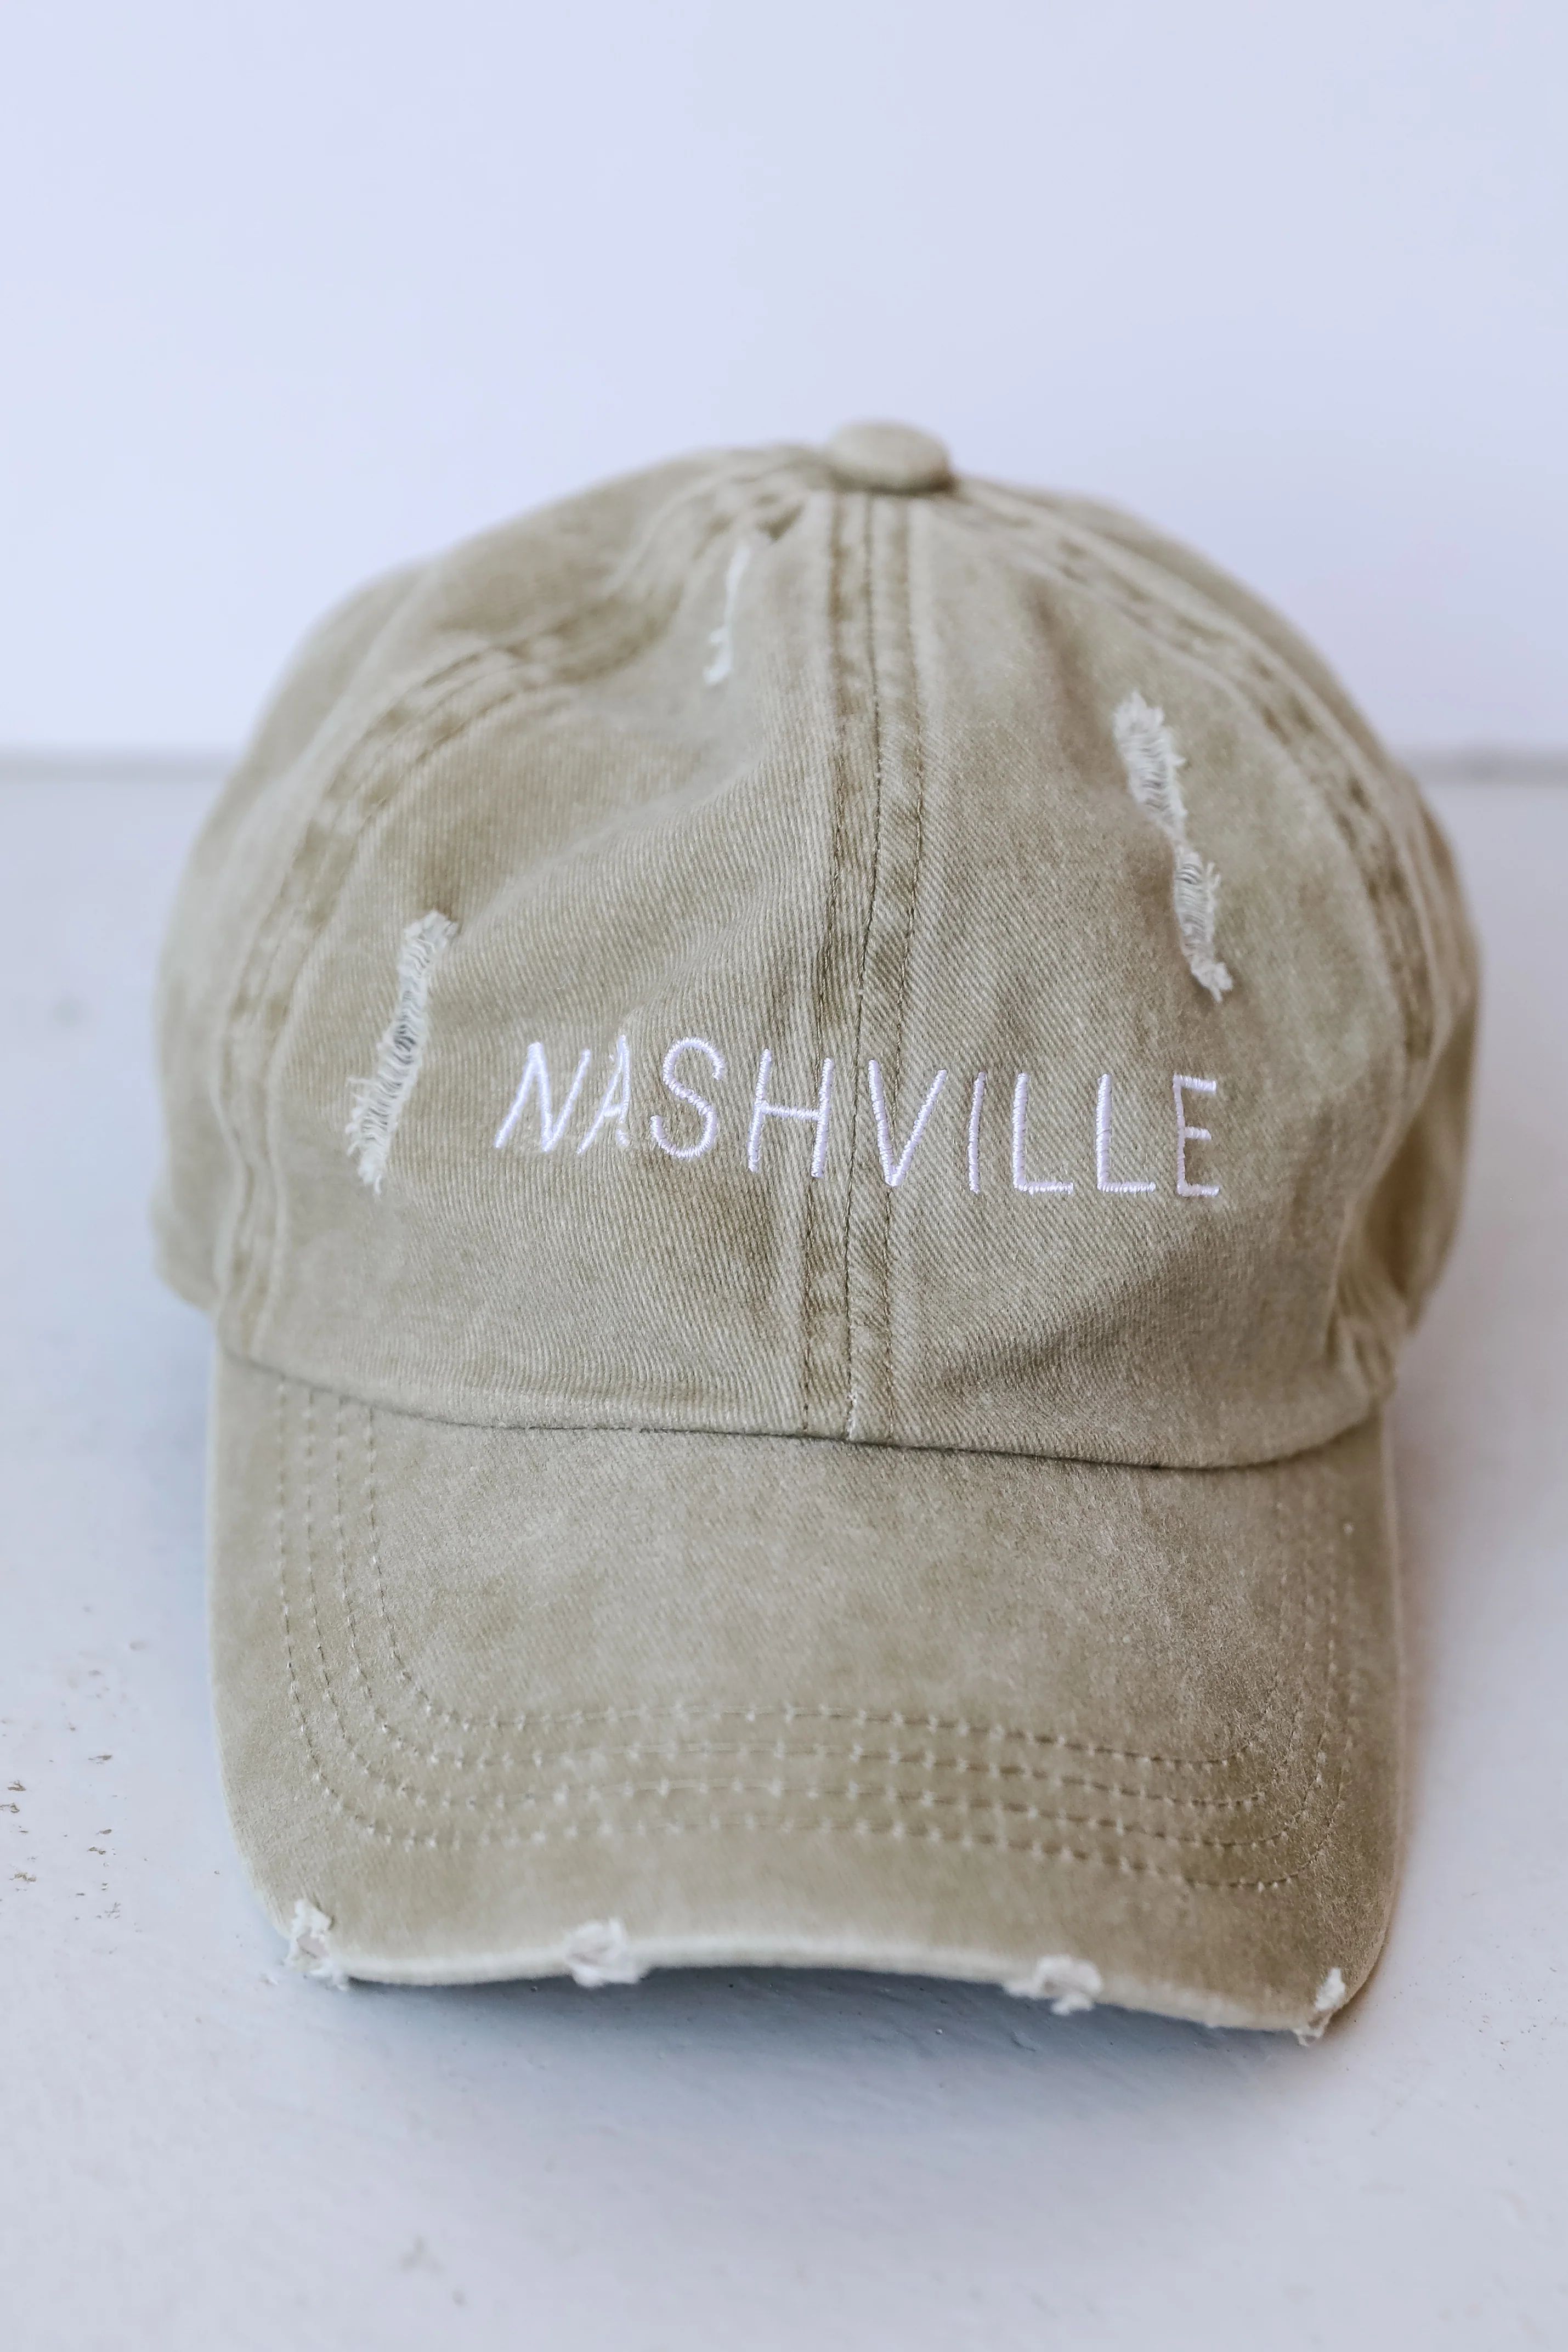 Nashville Vintage Embroidered Hat | Dress Up